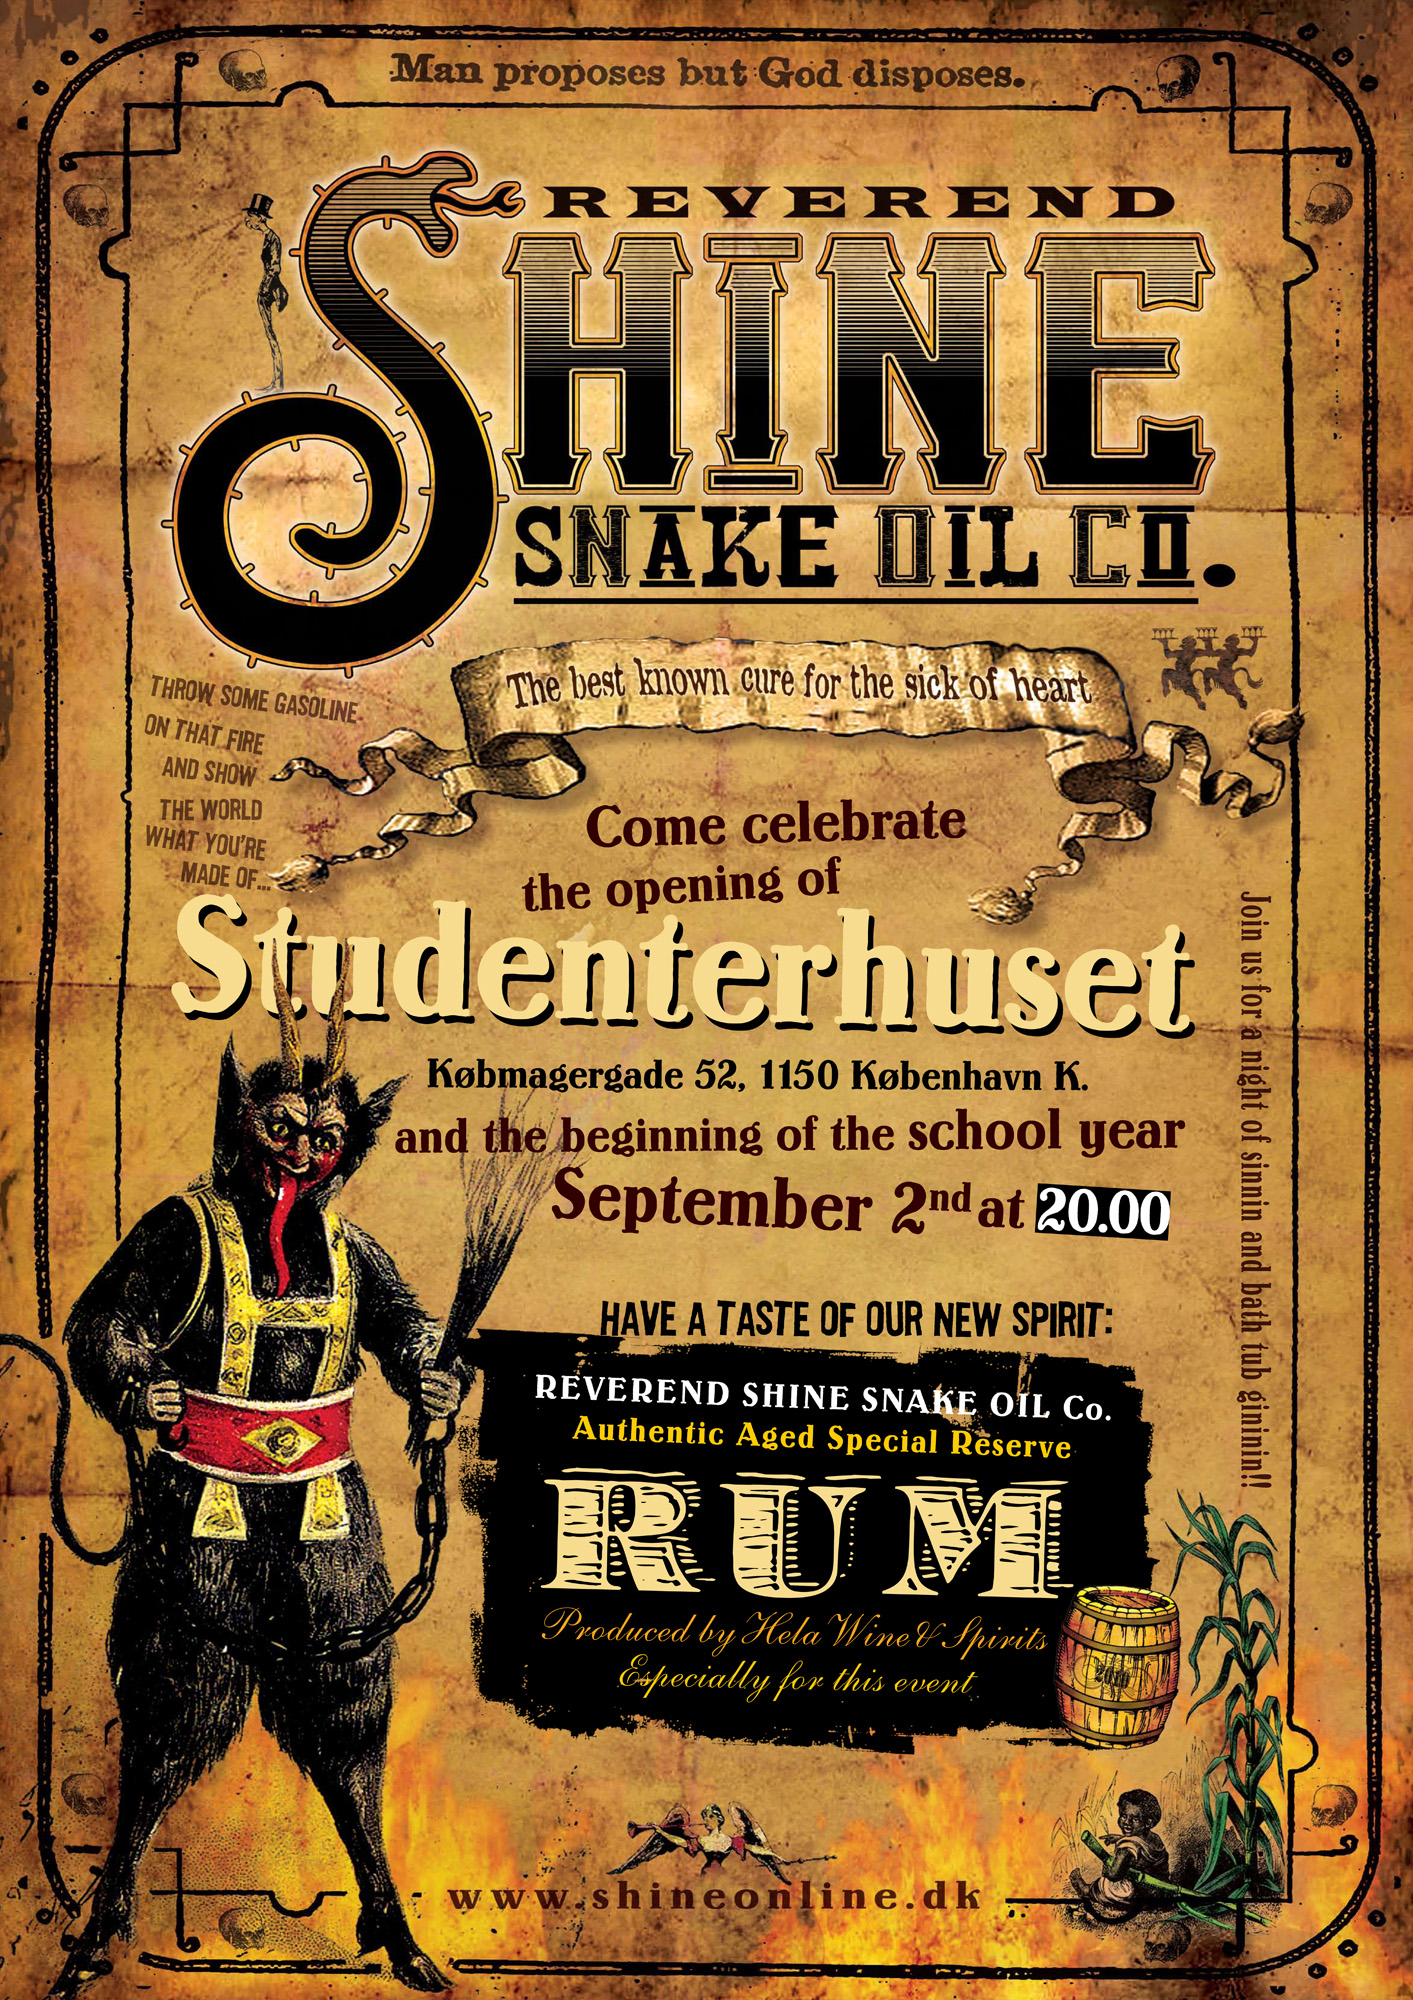 Reverend Shine Snake Oil Co